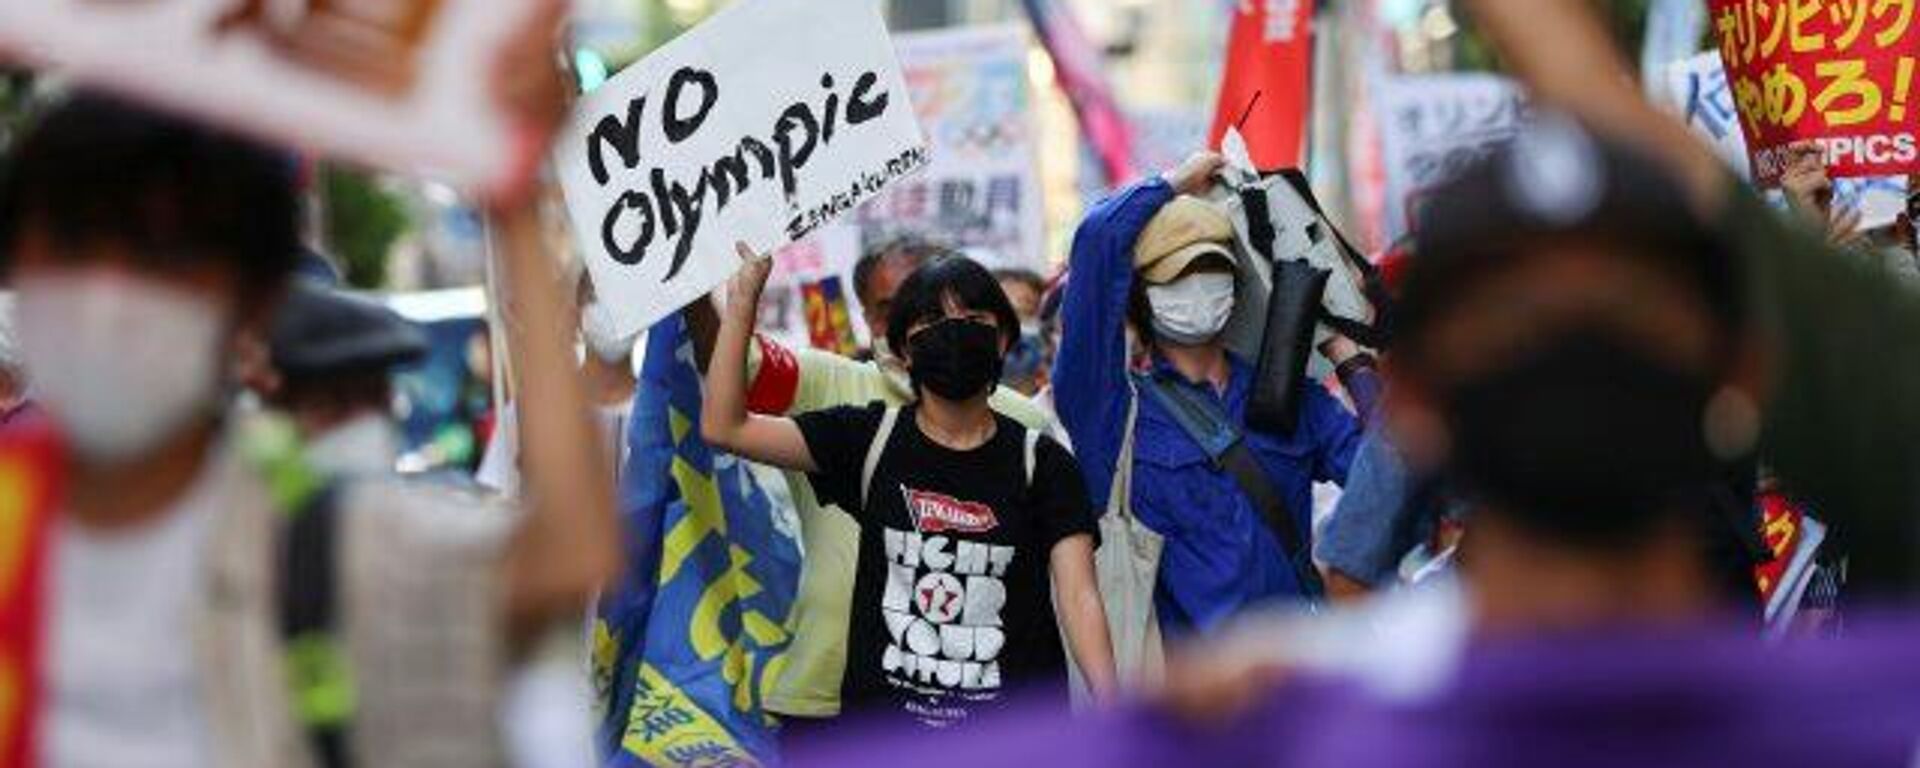 Manifestantes en Tokio despiden los Juegos Olímpicos con protestas - Sputnik Mundo, 1920, 08.08.2021